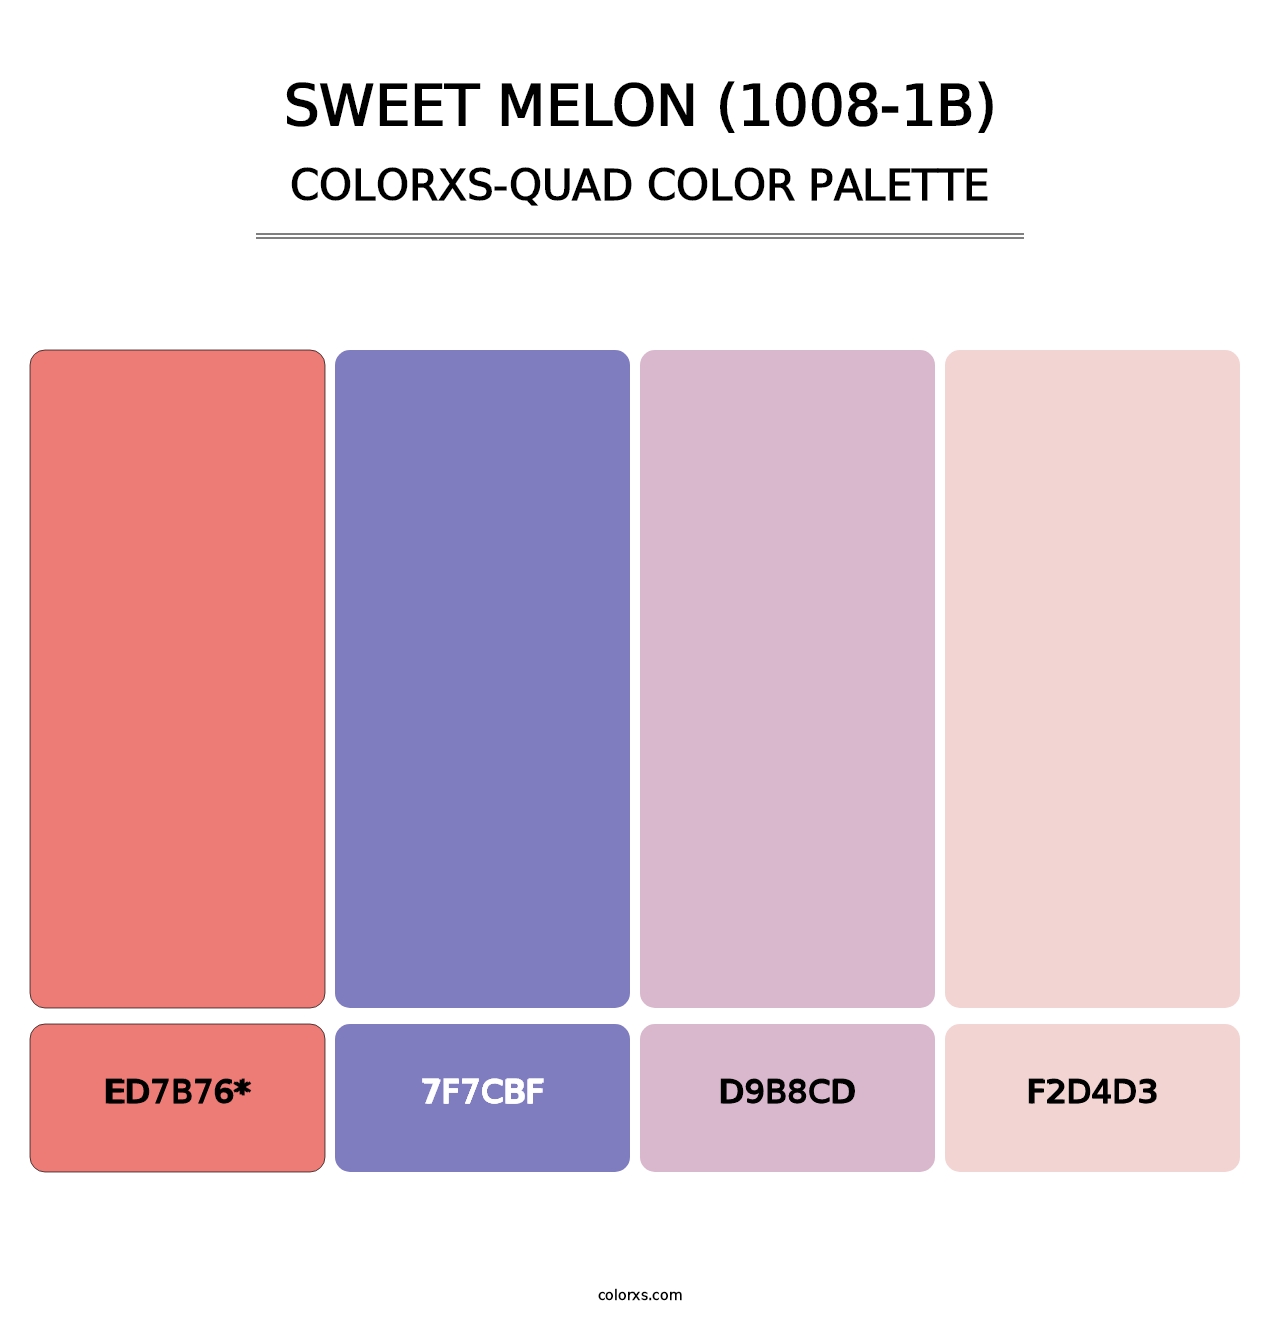 Sweet Melon (1008-1B) - Colorxs Quad Palette